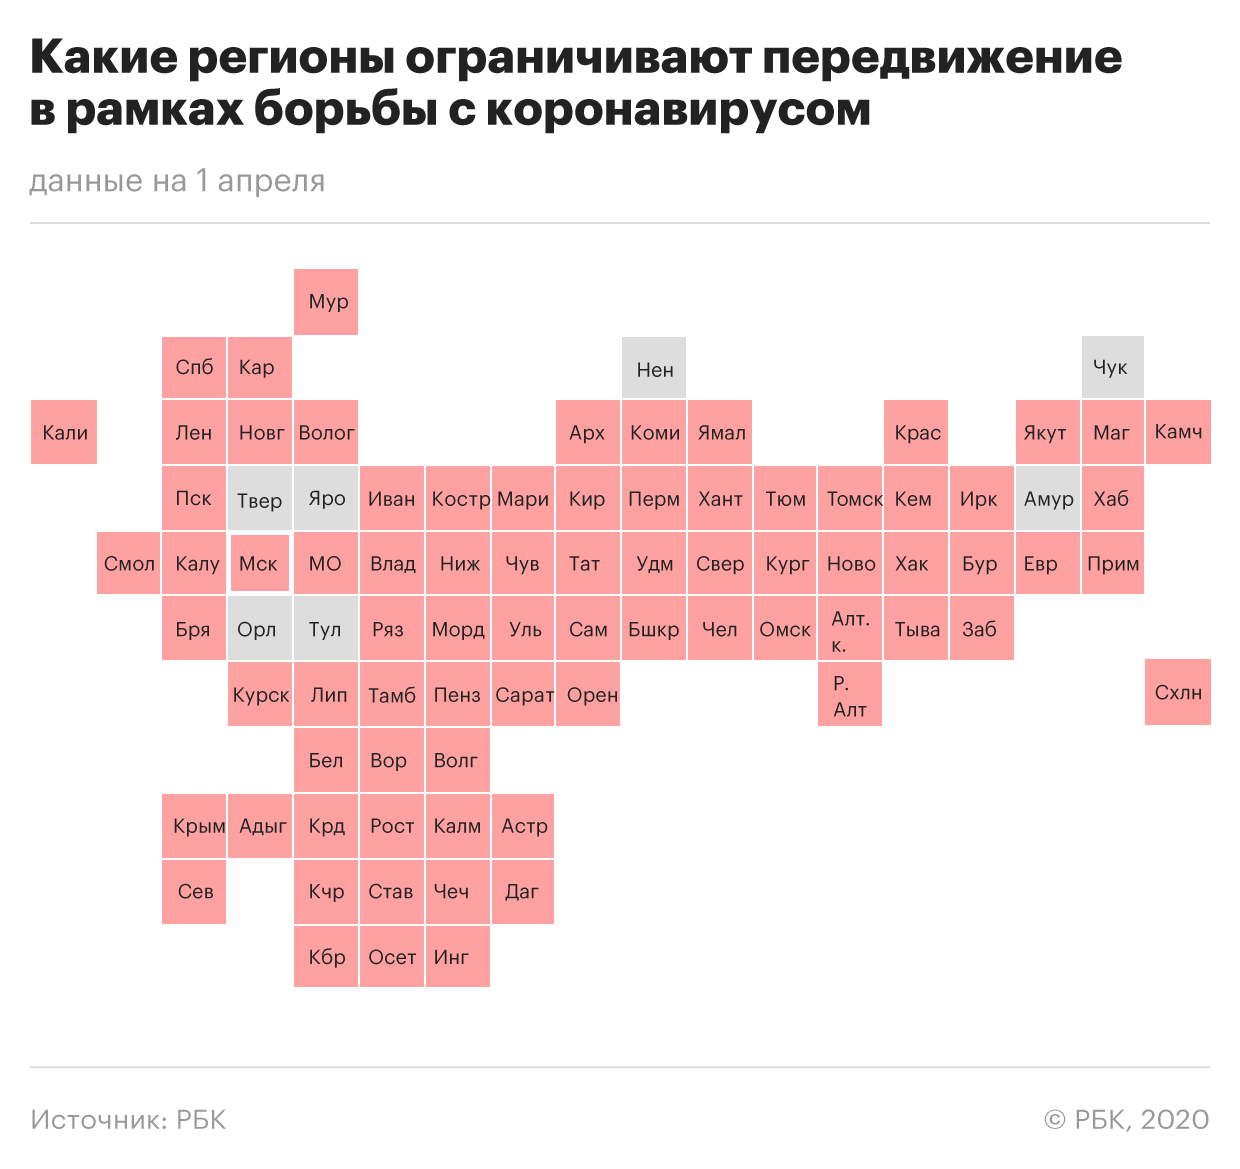 Коронавирус в России — где и сколько заболевших на сегодня, последние новости на 9 апреля 2020: Автомобилистов нарушителей карантина начнут штрафовать, главное за день